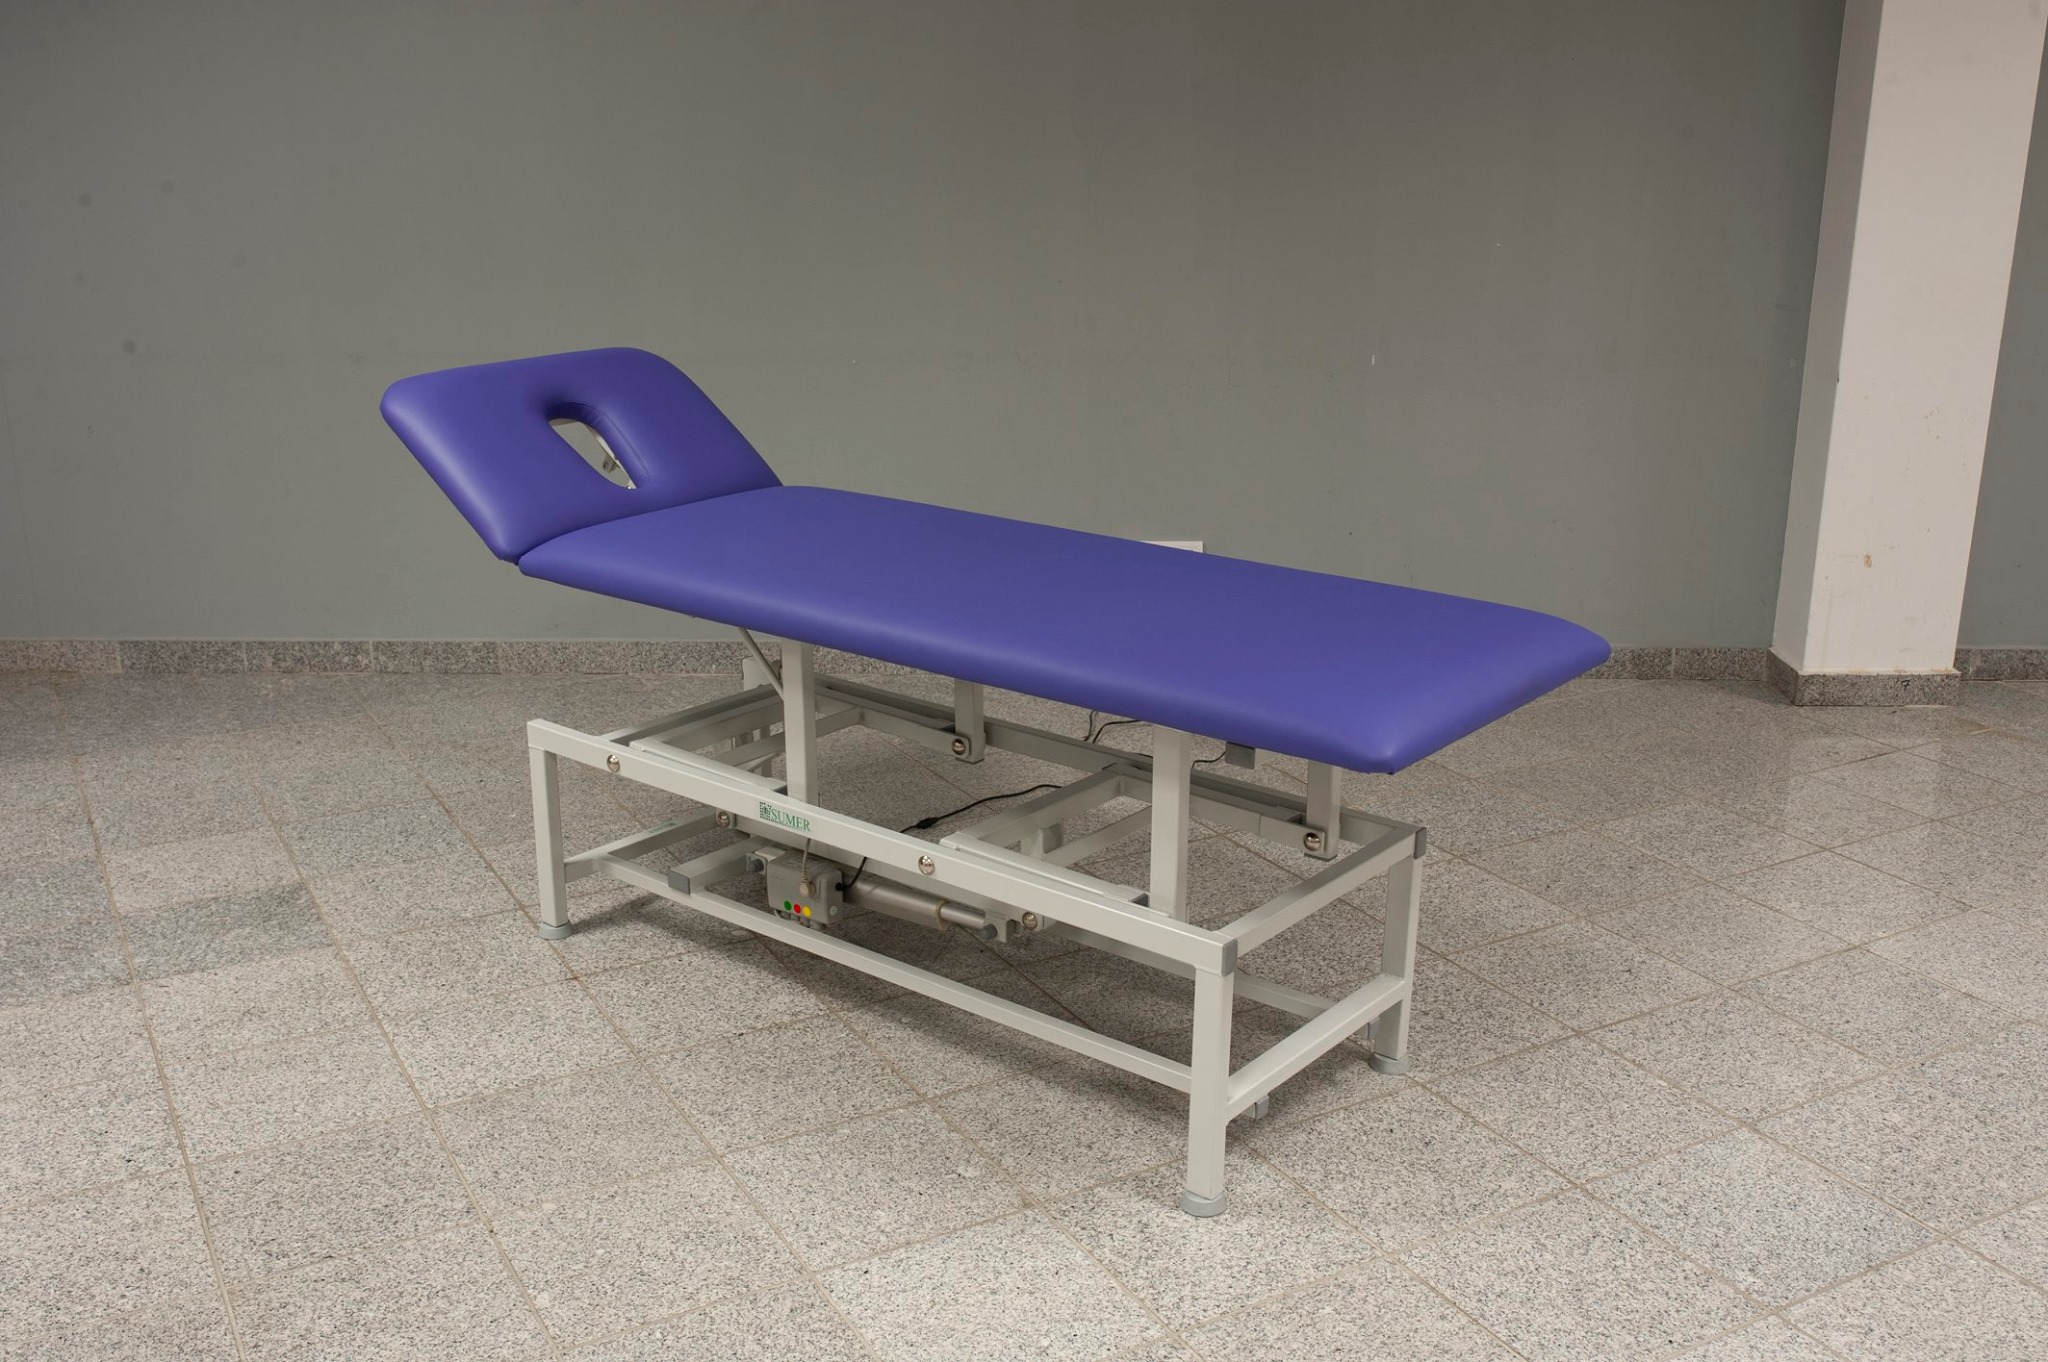 Przykładowe zamówienie: stół do masażu i rehabilitacji Sumer Reha Cube Electra